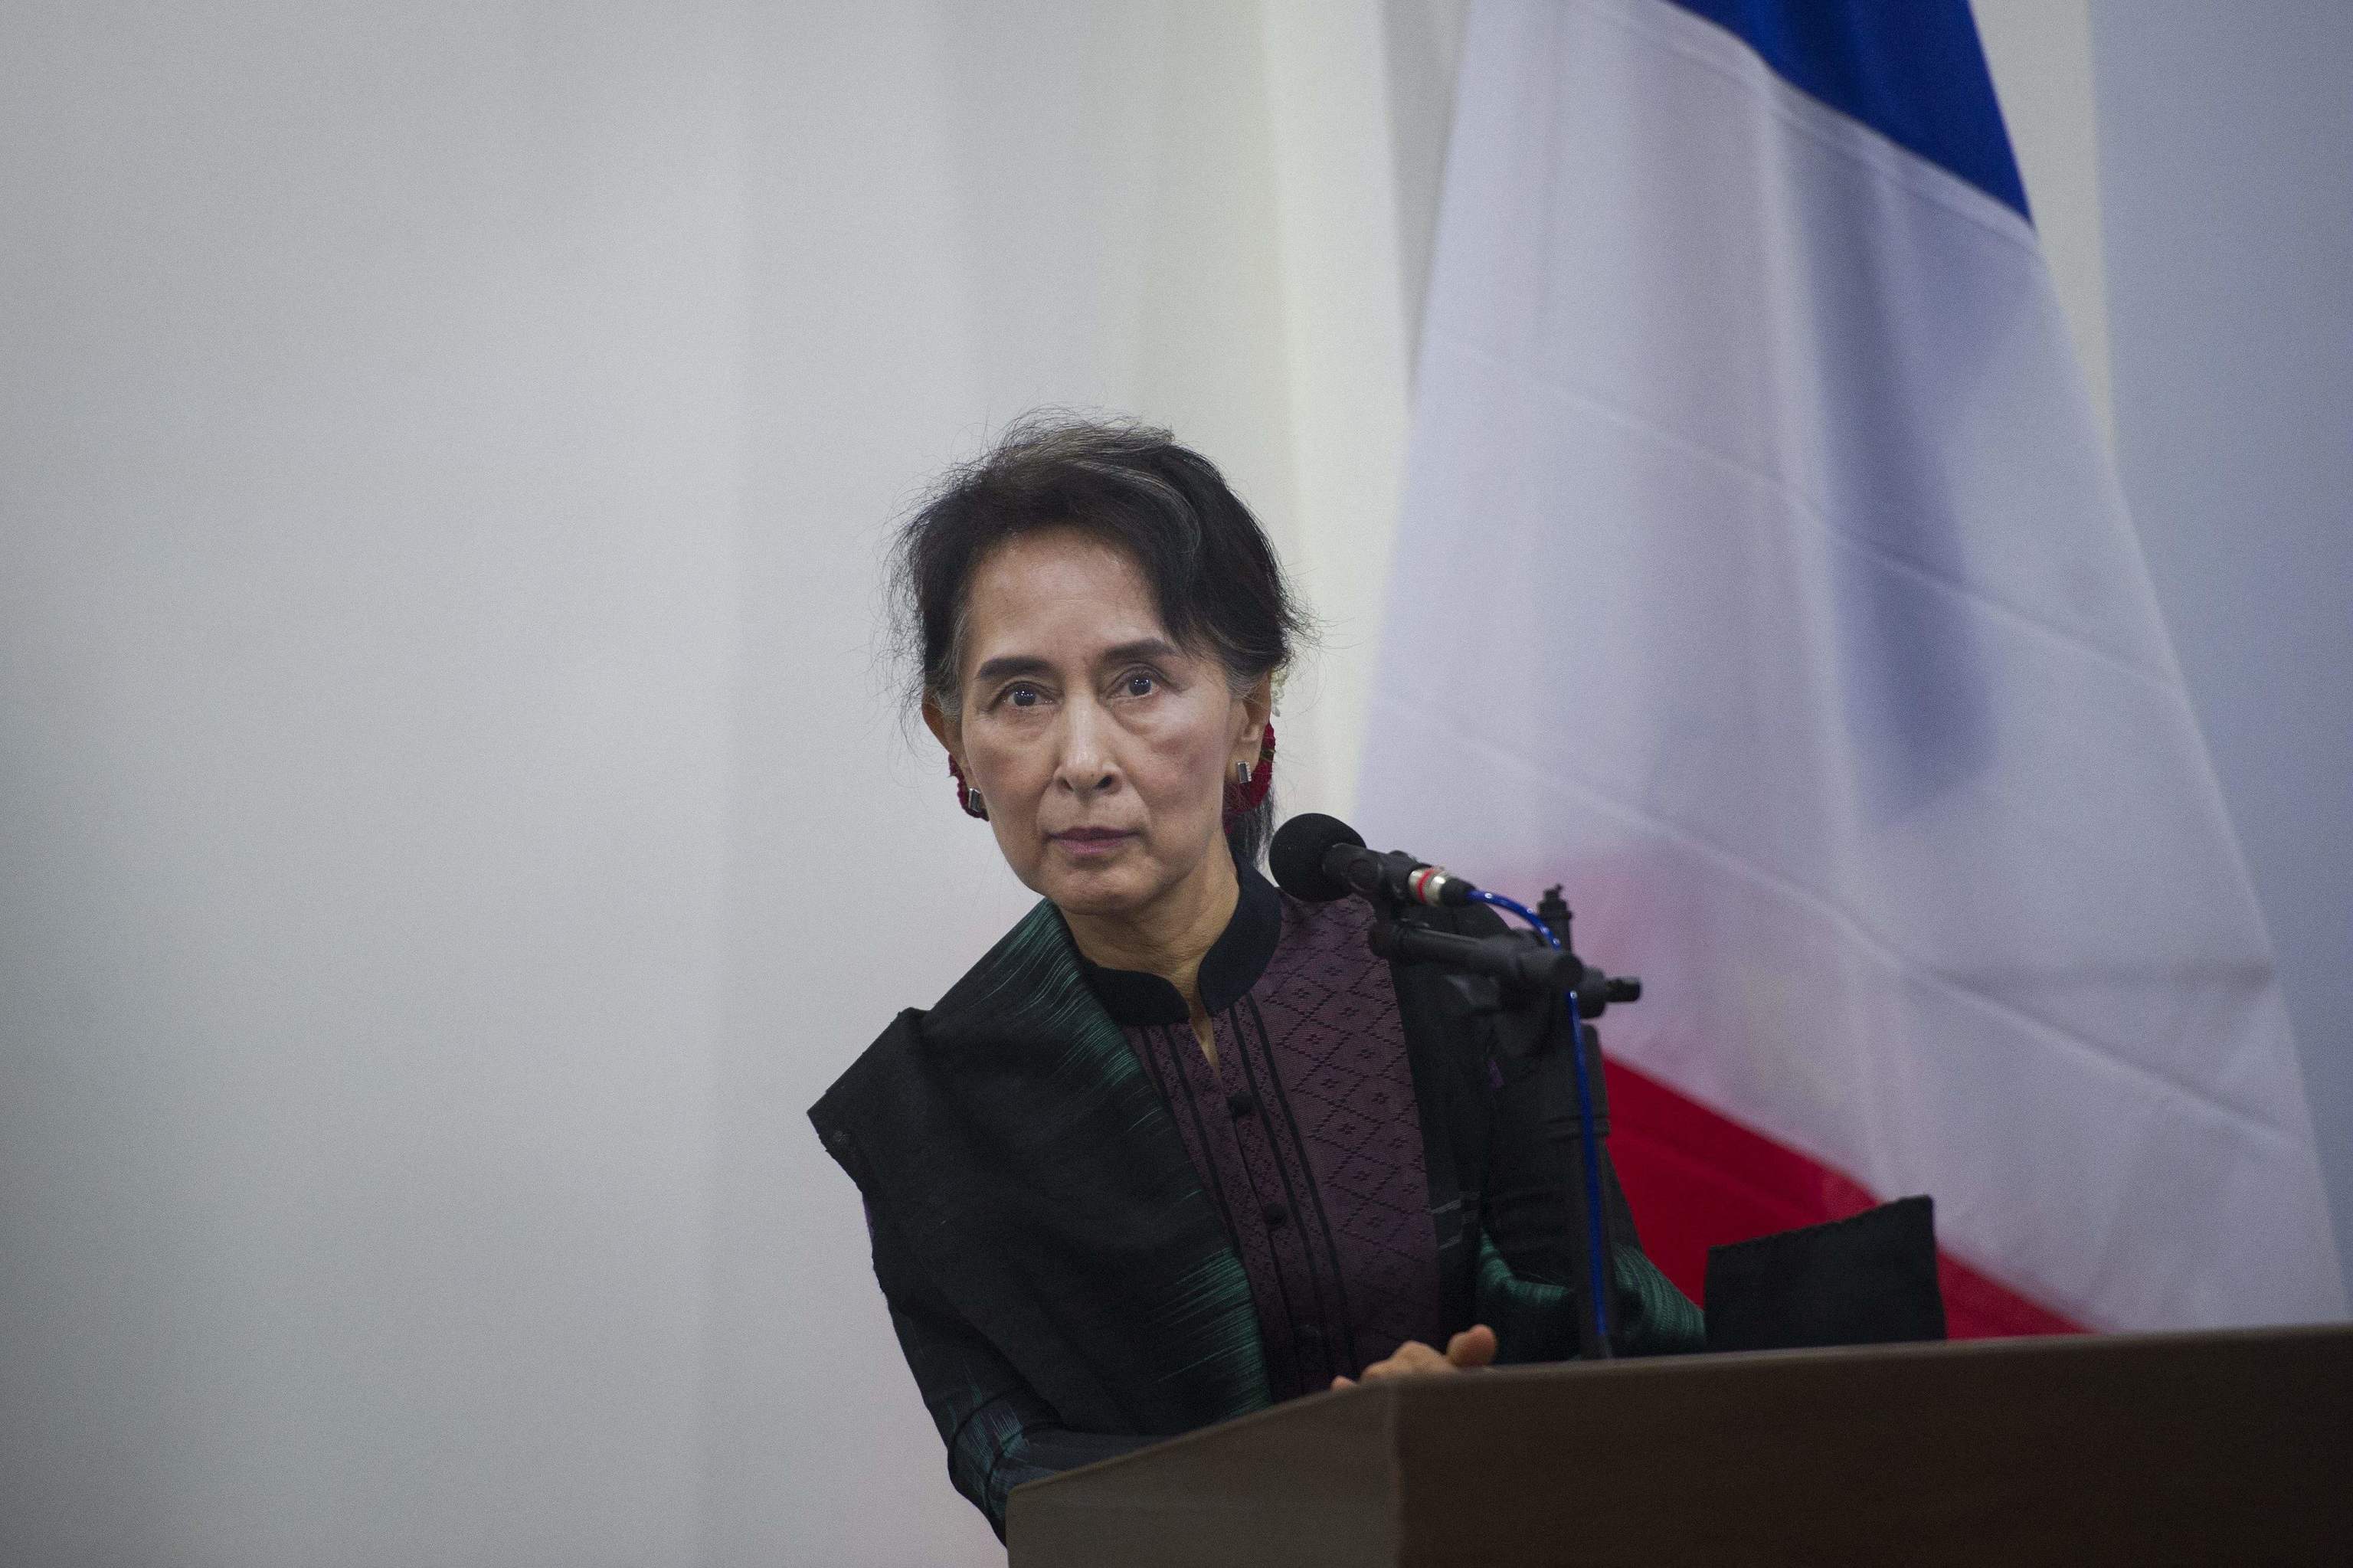 oto de archivo tomada el 17 de junio de 2016, la consejera de Estado y ministra de Asuntos Exteriores de Myanmar, Aung San Suu Kyi, asiste a una rueda de prensa conjunta con el ministro de Asuntos Exteriores francs, Jean-Marc Ayrault, en Naypyidaw. - Un tribunal de la junta de Myanmar conden a la destituida lder Aung San Suu Kyi a otros seis aos de prisin por corrupcin el 12 de octubre de 2022, dijo una fuente con conocimiento del caso, lo que eleva el tiempo total de prisin de la premio Nobel a 26 aos.